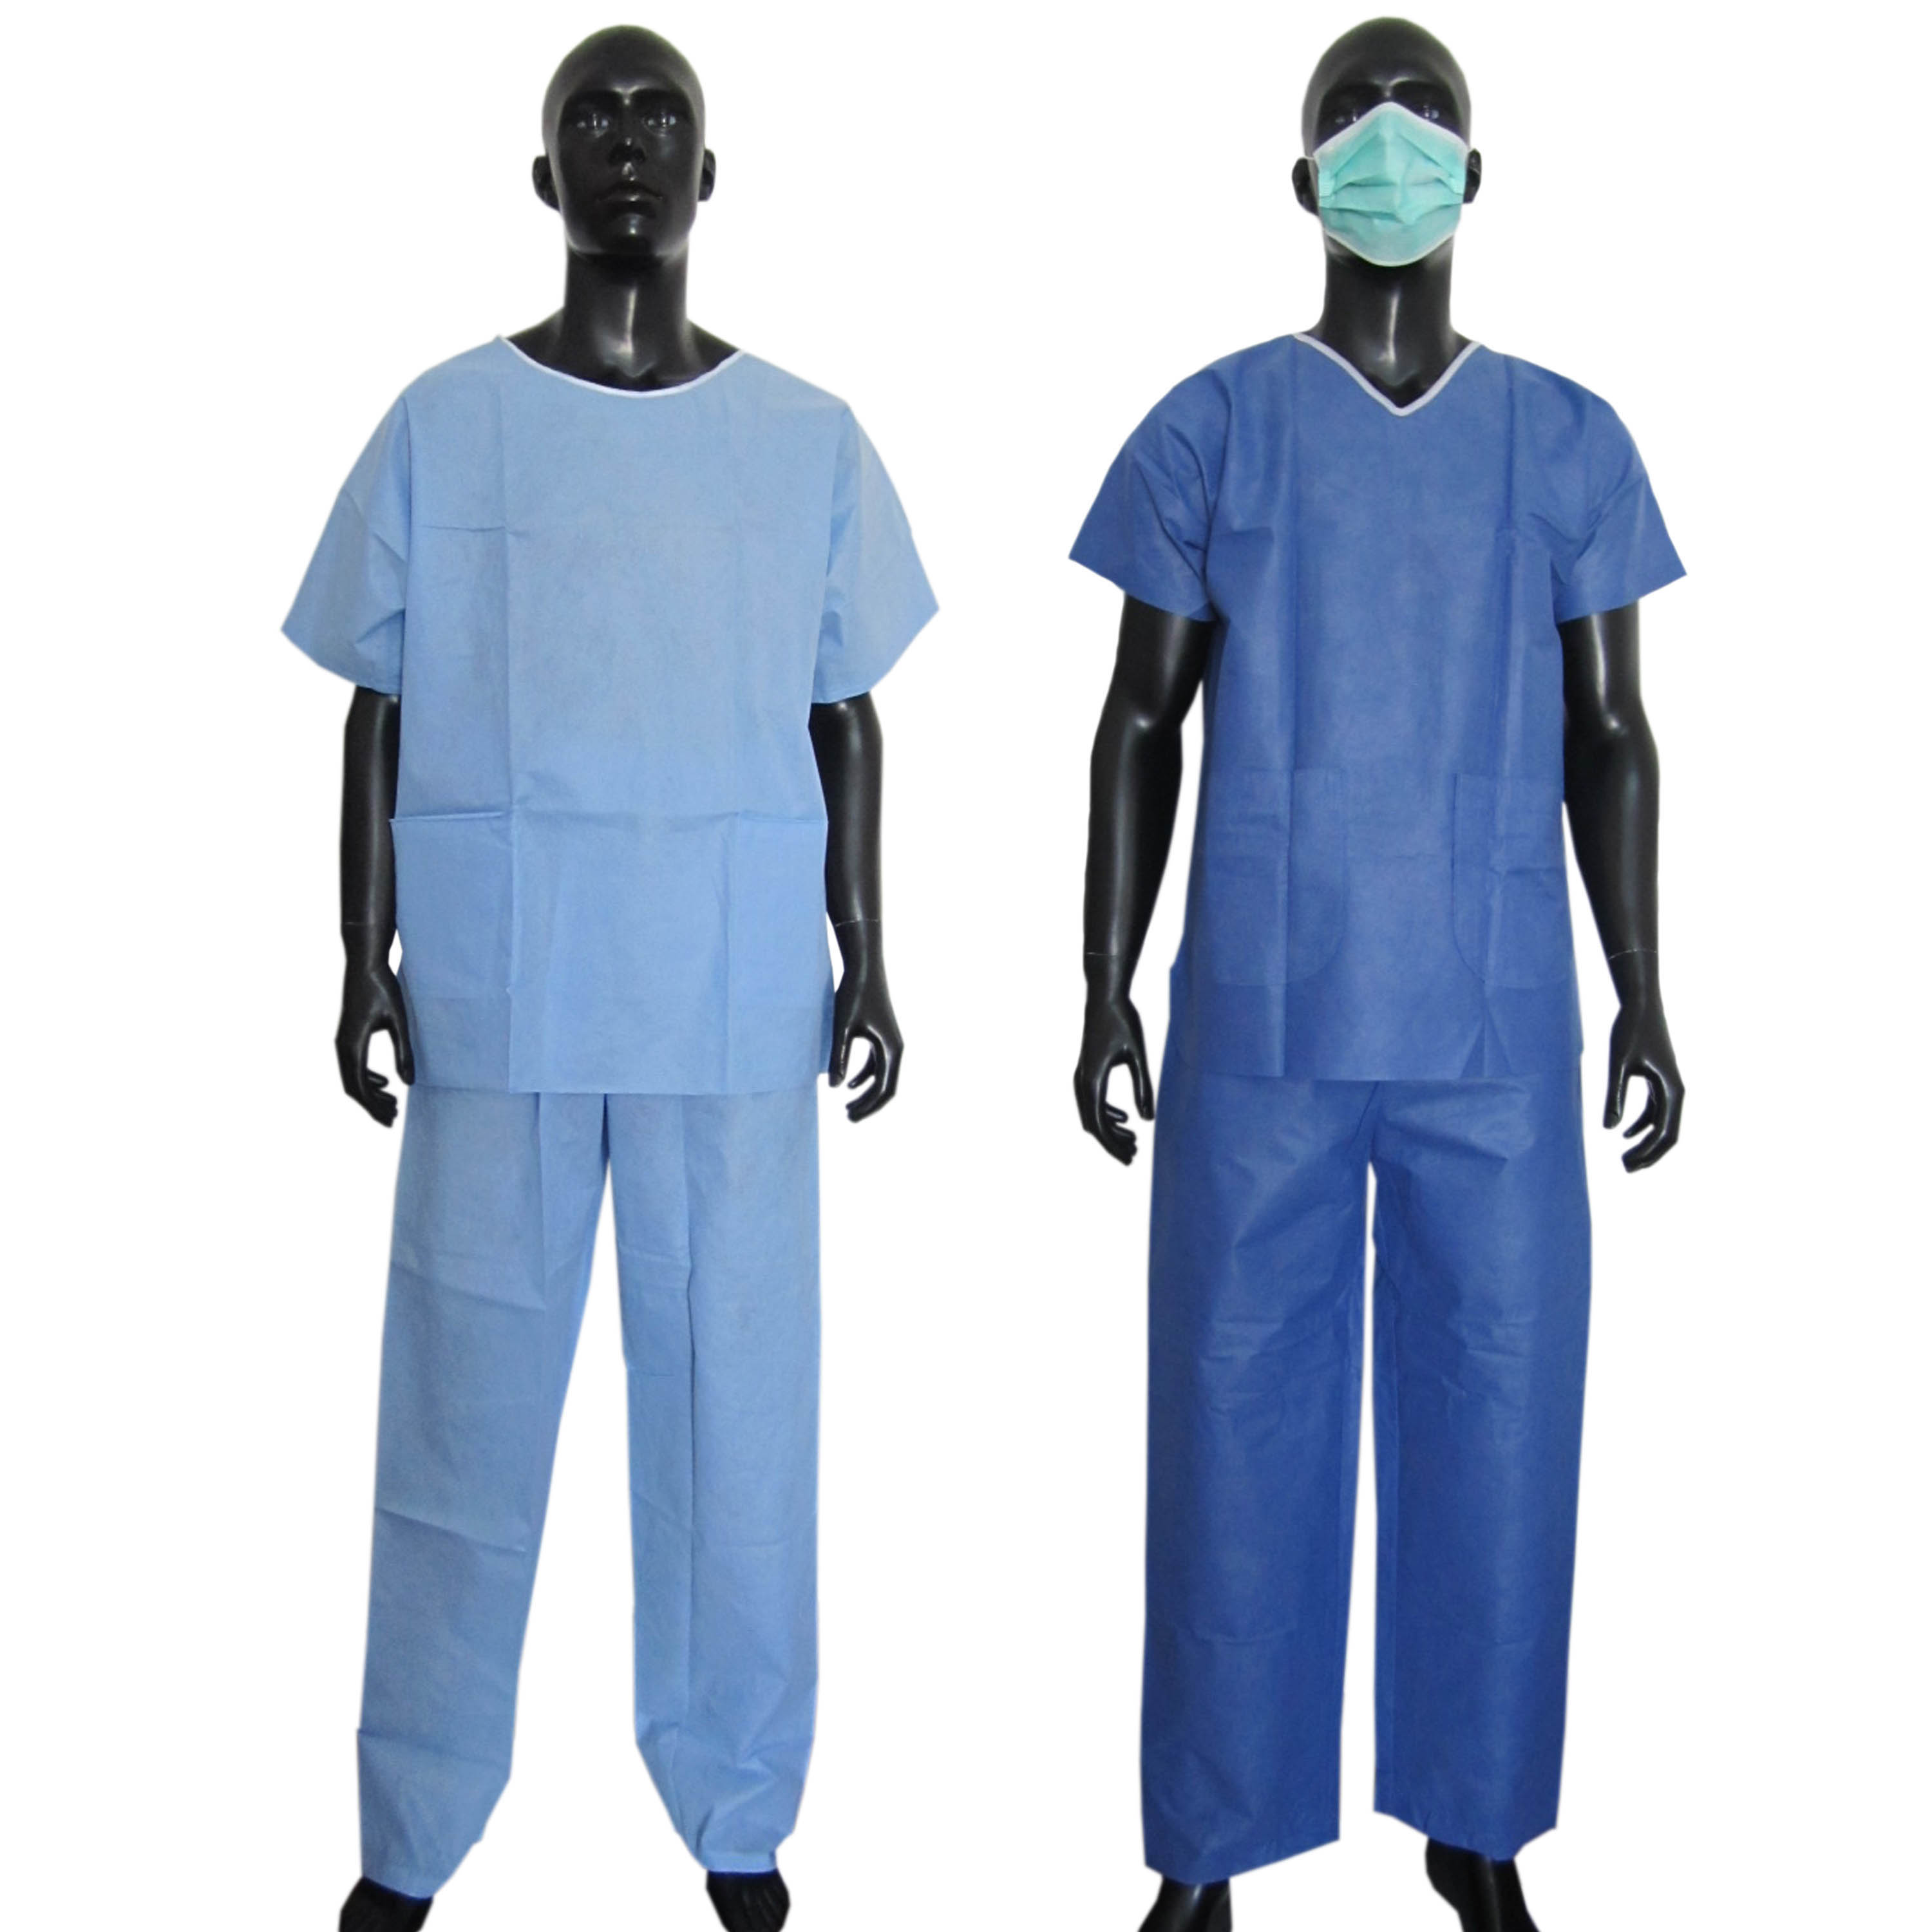 使い捨てスクラブスーツ再利用可能なスクラブスーツドクターナーススクラブスーツ病院の制服